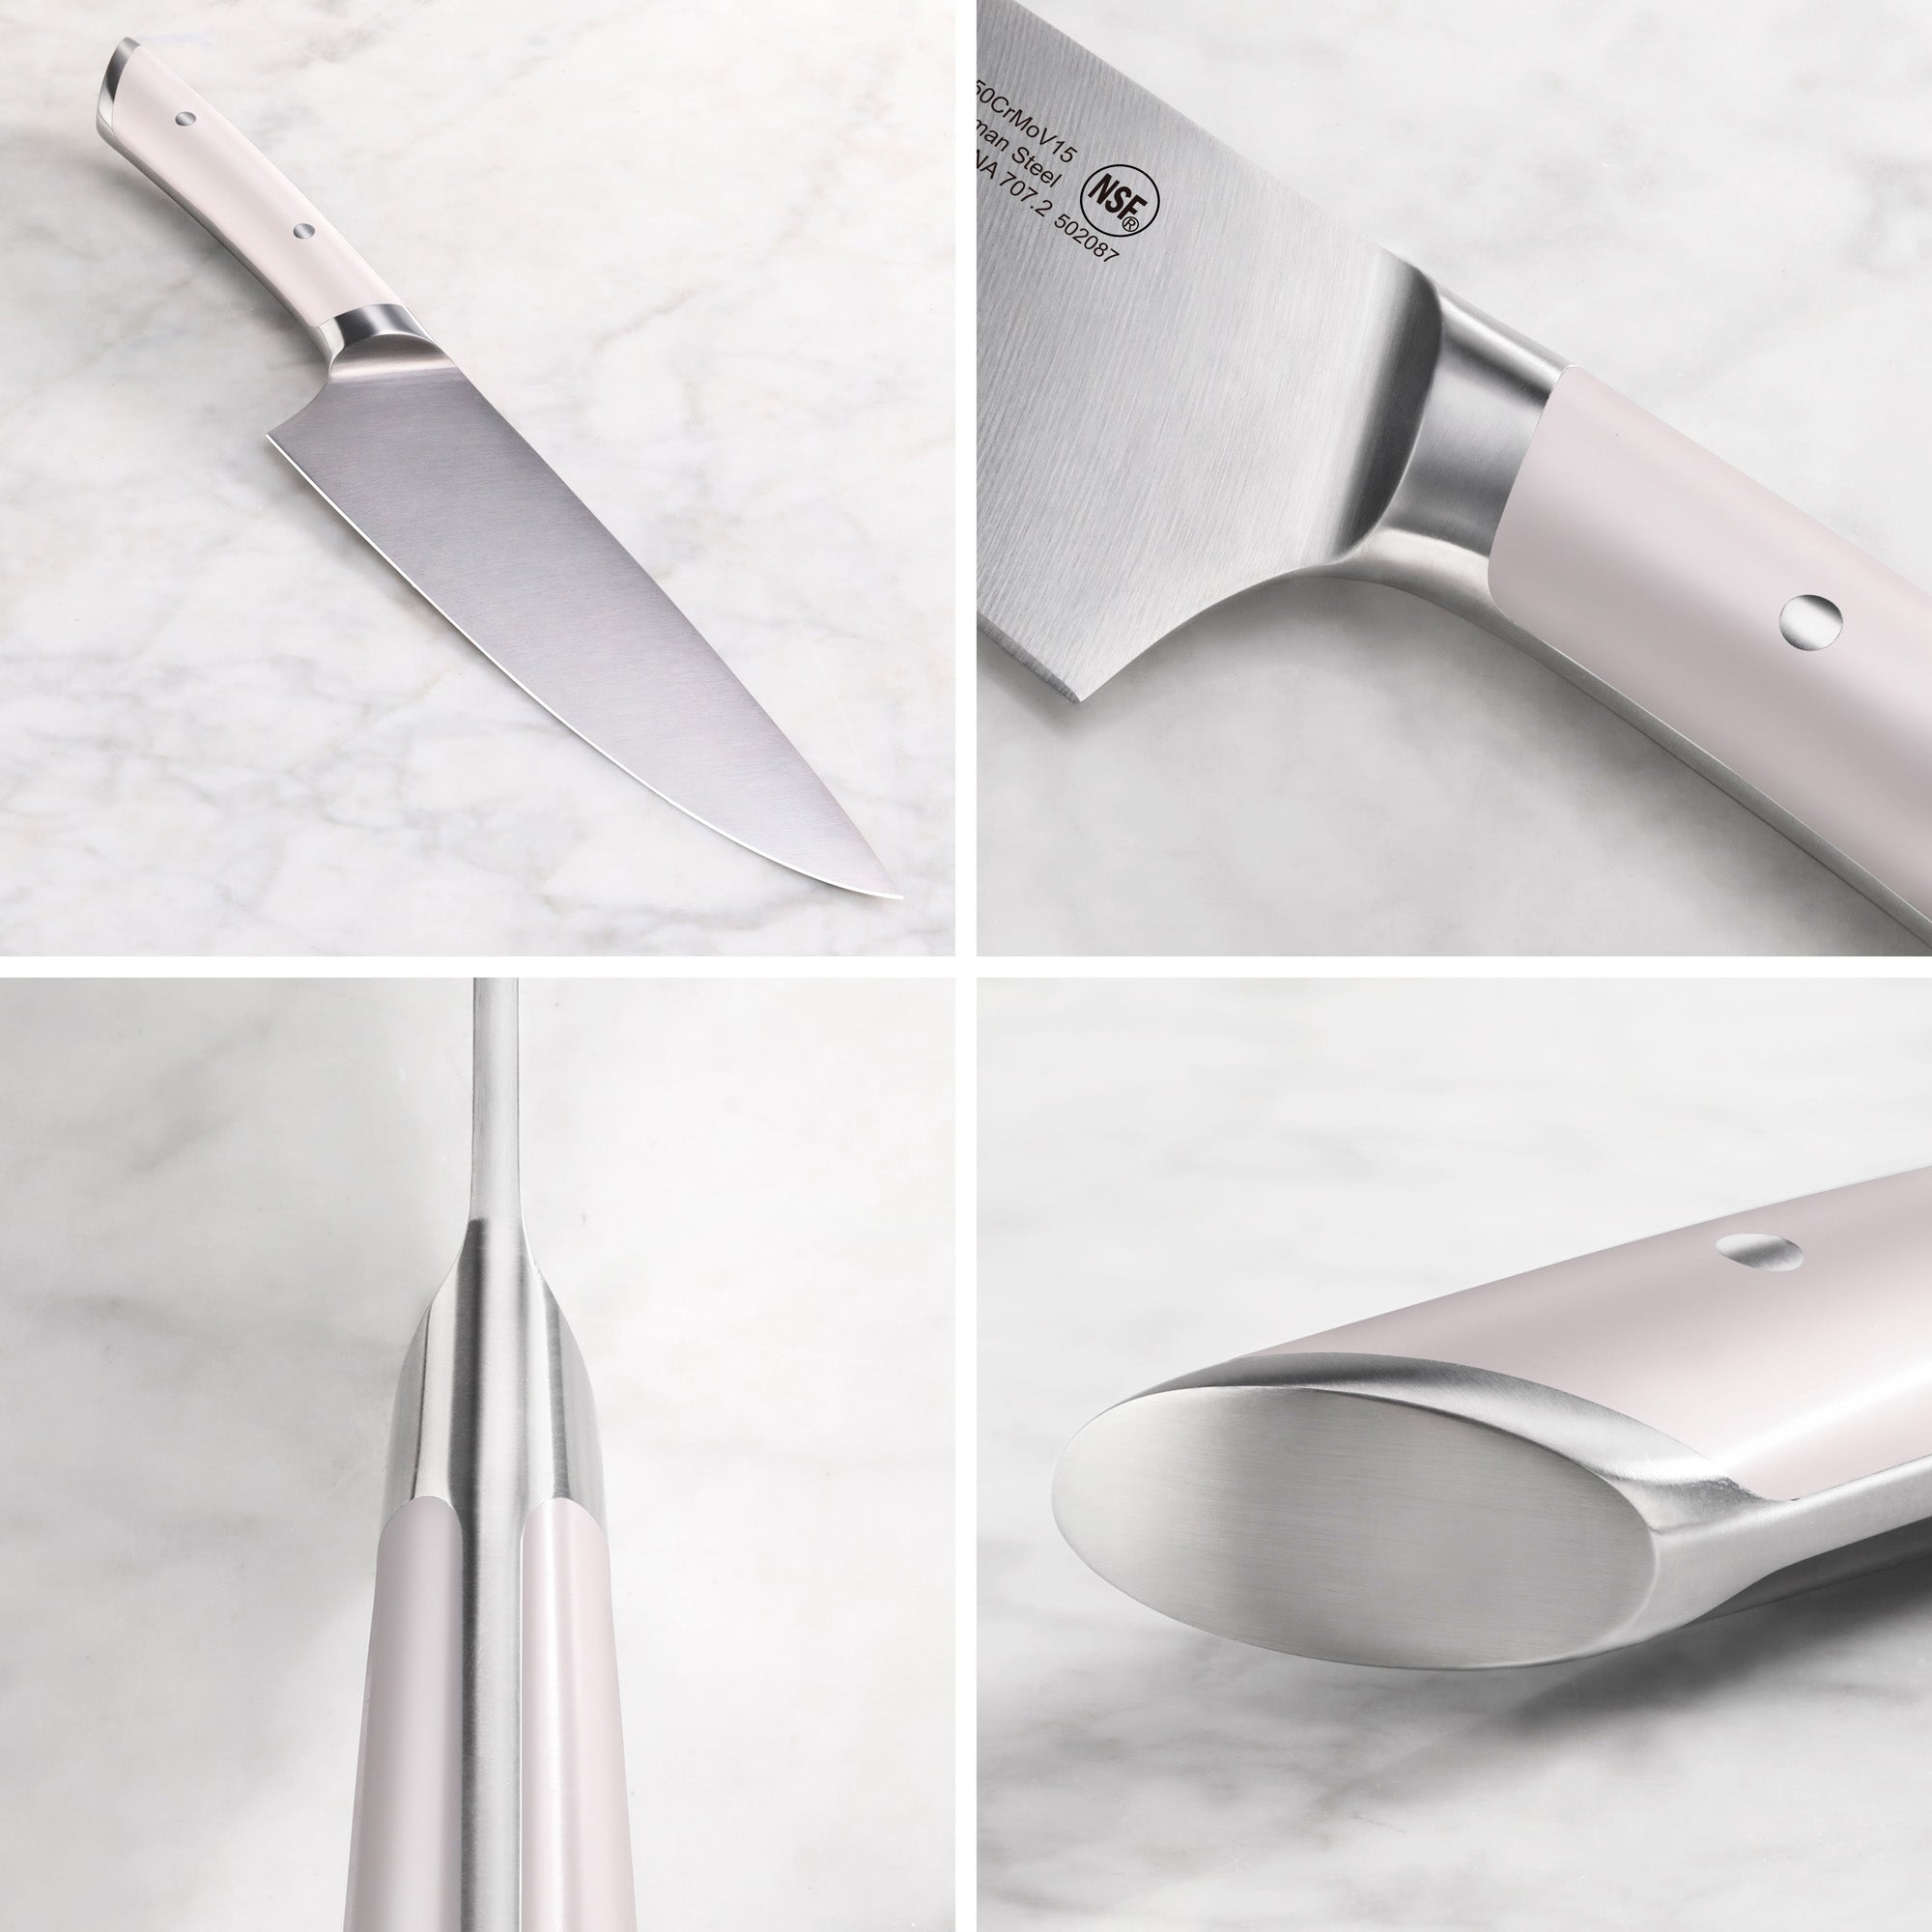 Cangshan HELENA Series German Steel 12-piece Knife Block Set, White